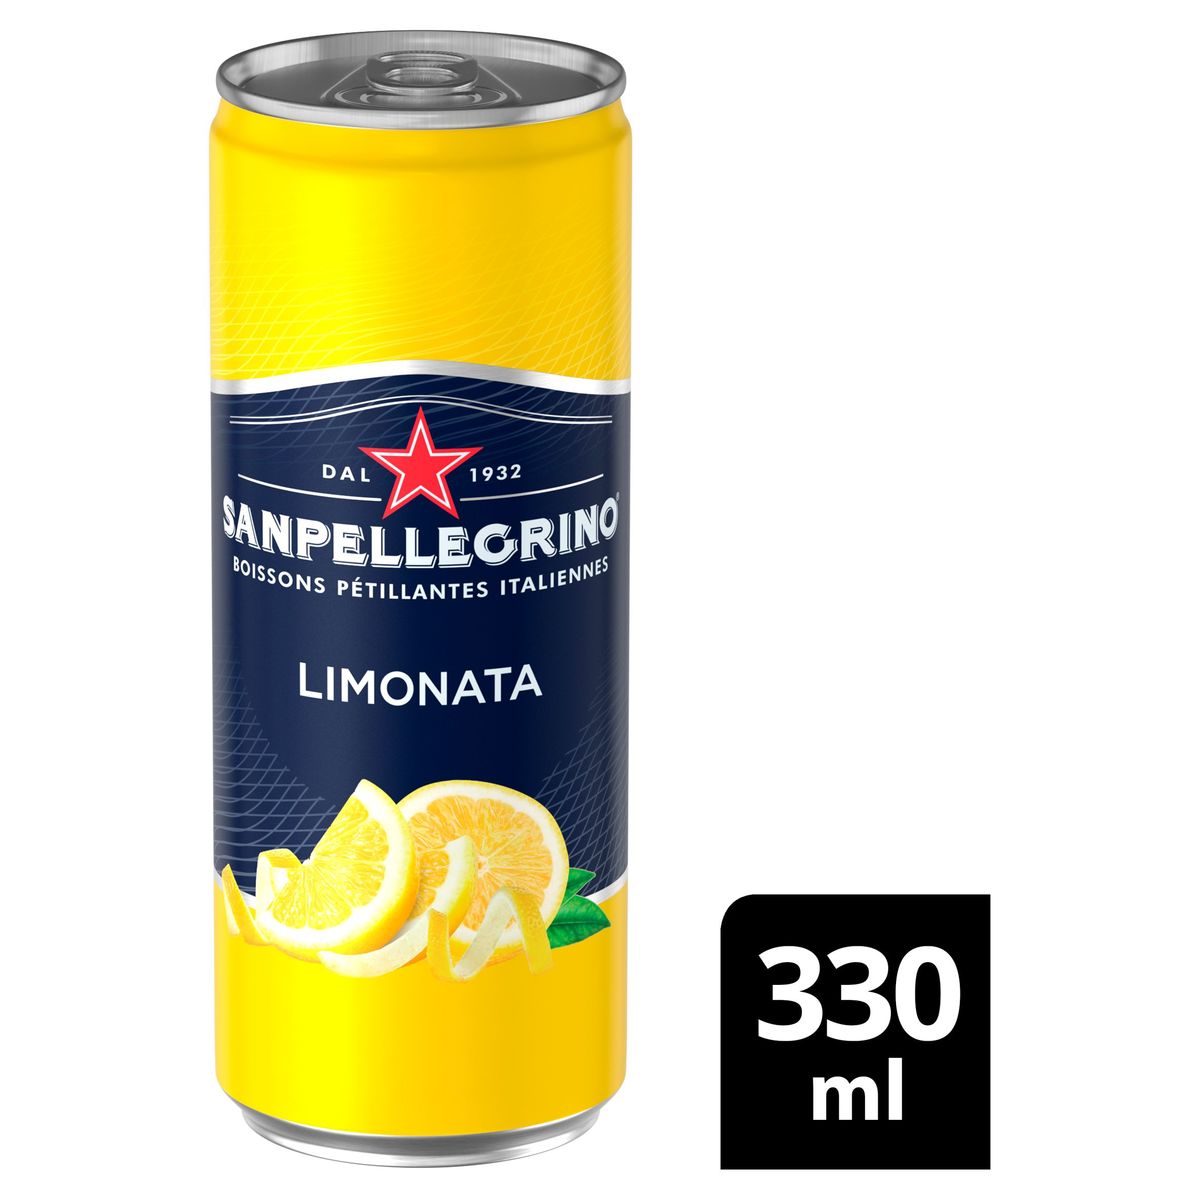 Sanpellegrino Limonade Limonata 33cl